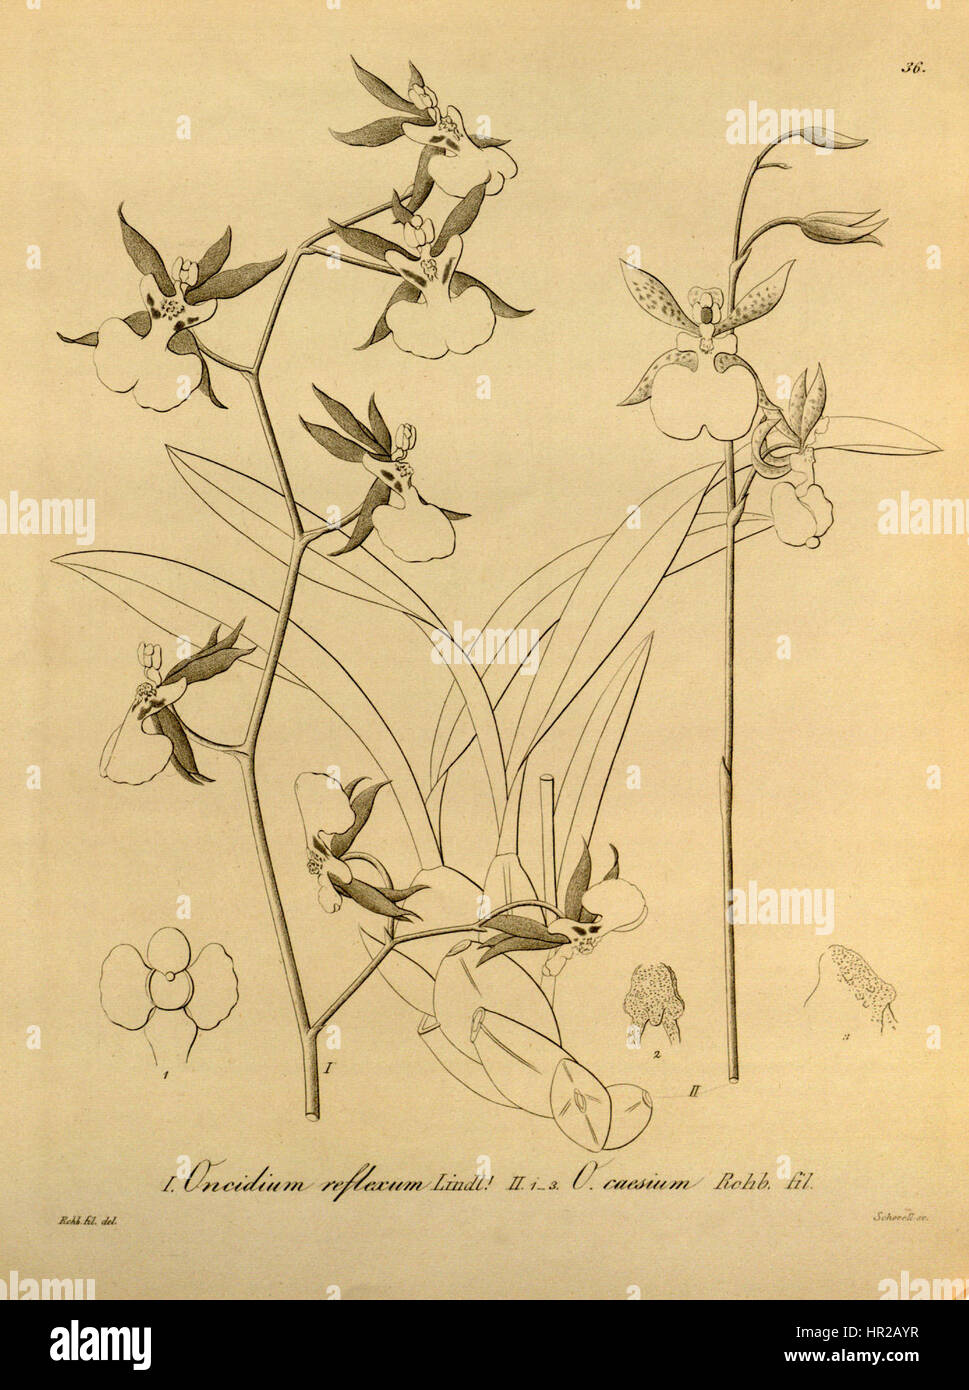 Oncidium reflexum - Oncidium geertianum (as Oncidium caesium) - Xenia vol 1 pl 36 (1858) Stock Photo